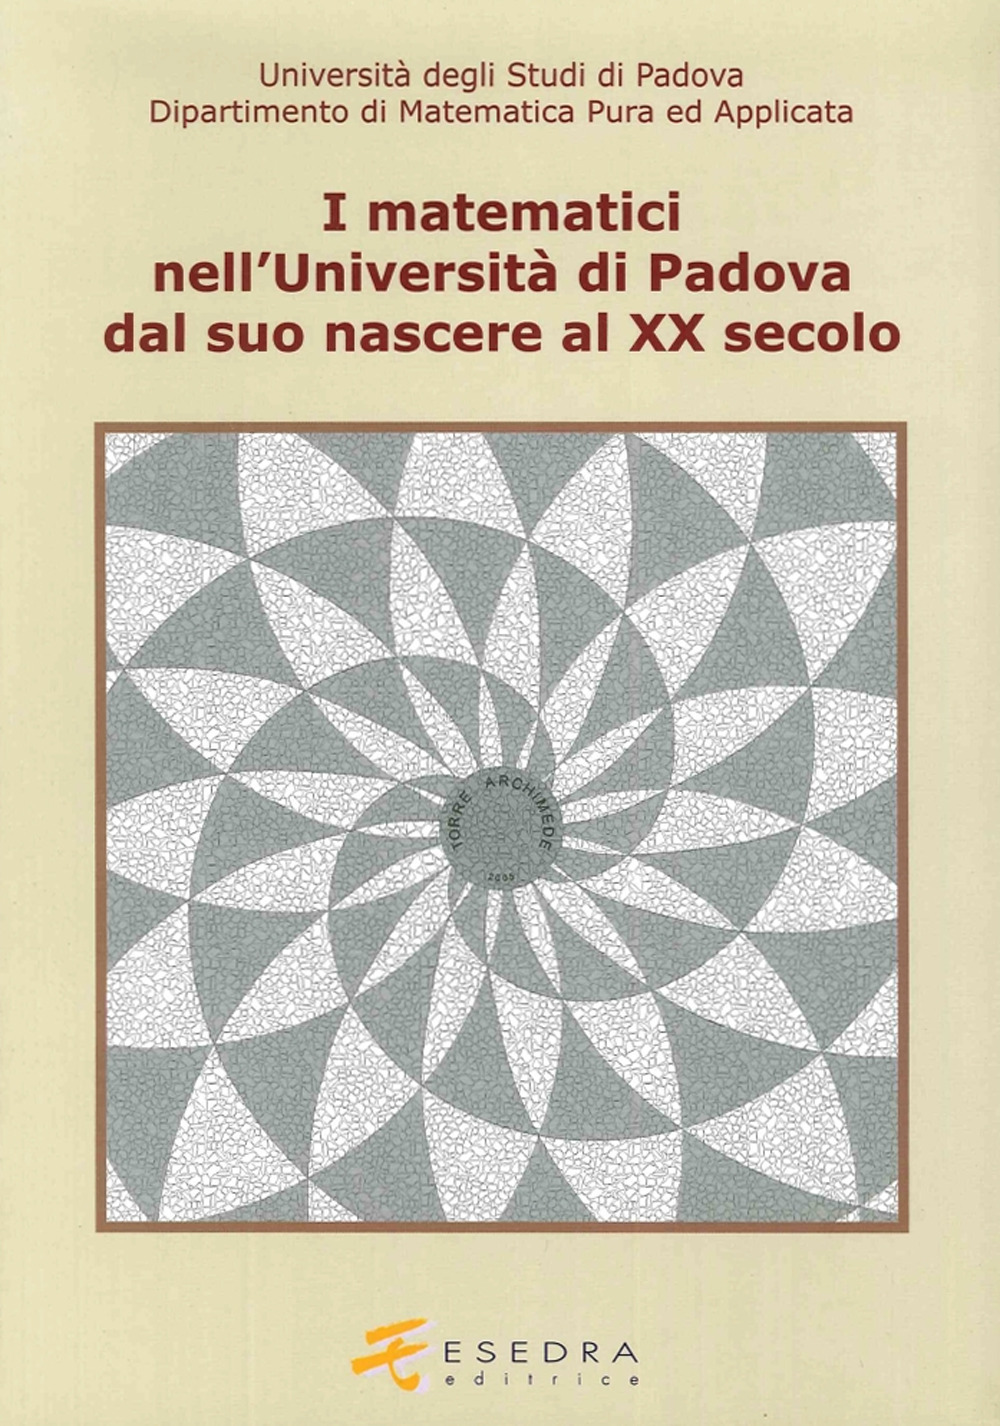 I matematici nell'Università di Padova. Dal suo nascere al XX secolo